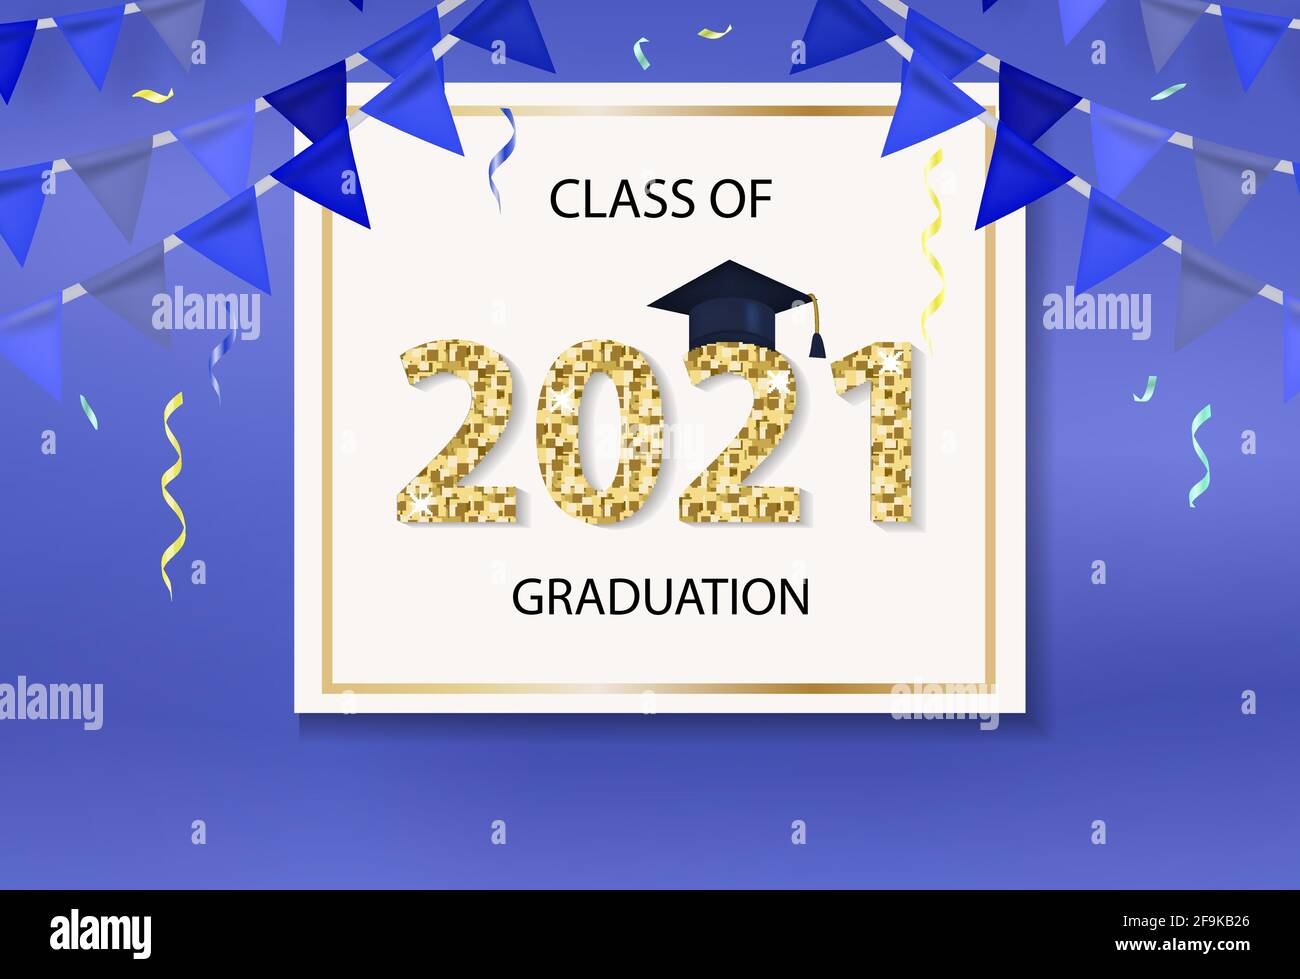 Class of 2021 Graduation Gratulation Vorlage für Ihr Design mit Graduation Hut und glänzenden Zahlen. Vektorgrafik Stock Vektor